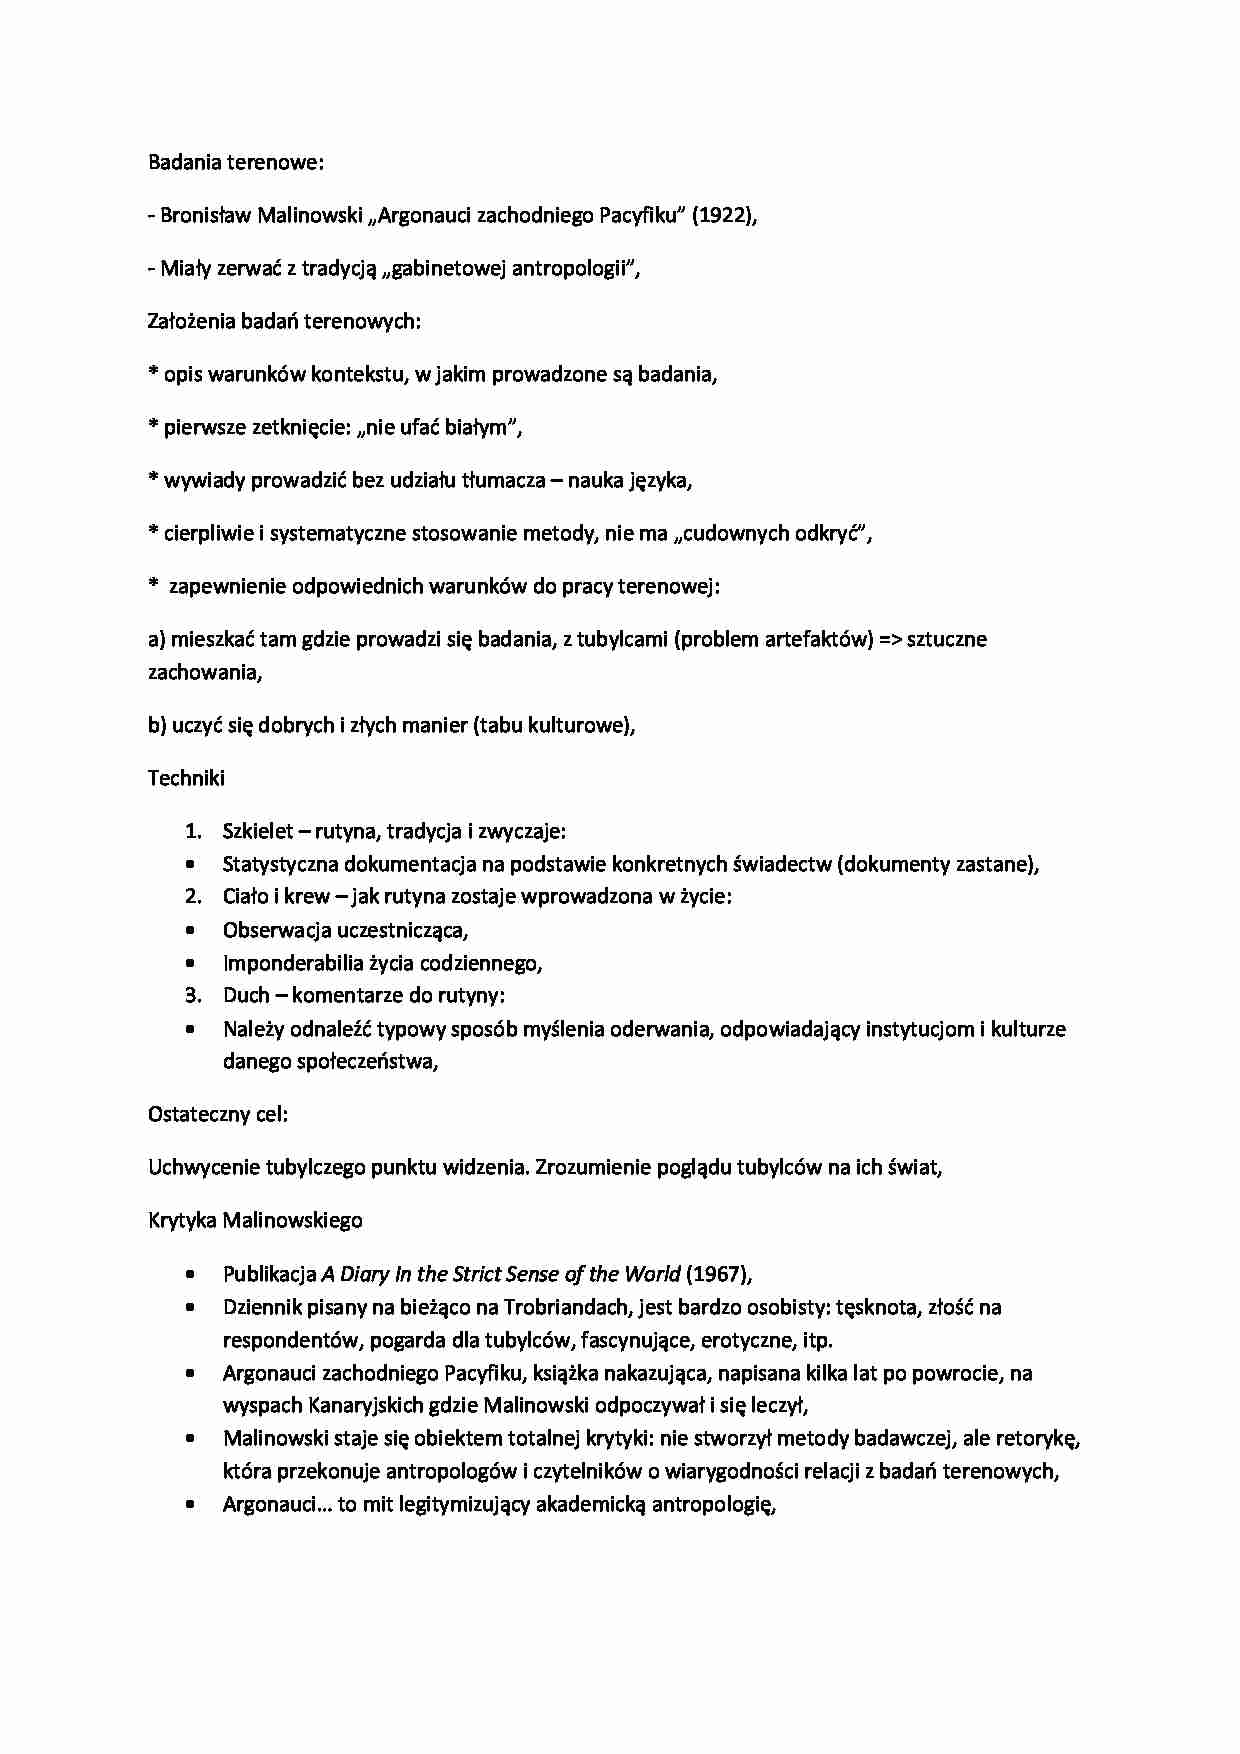 Badania terenowe - założenia i techniki   - strona 1